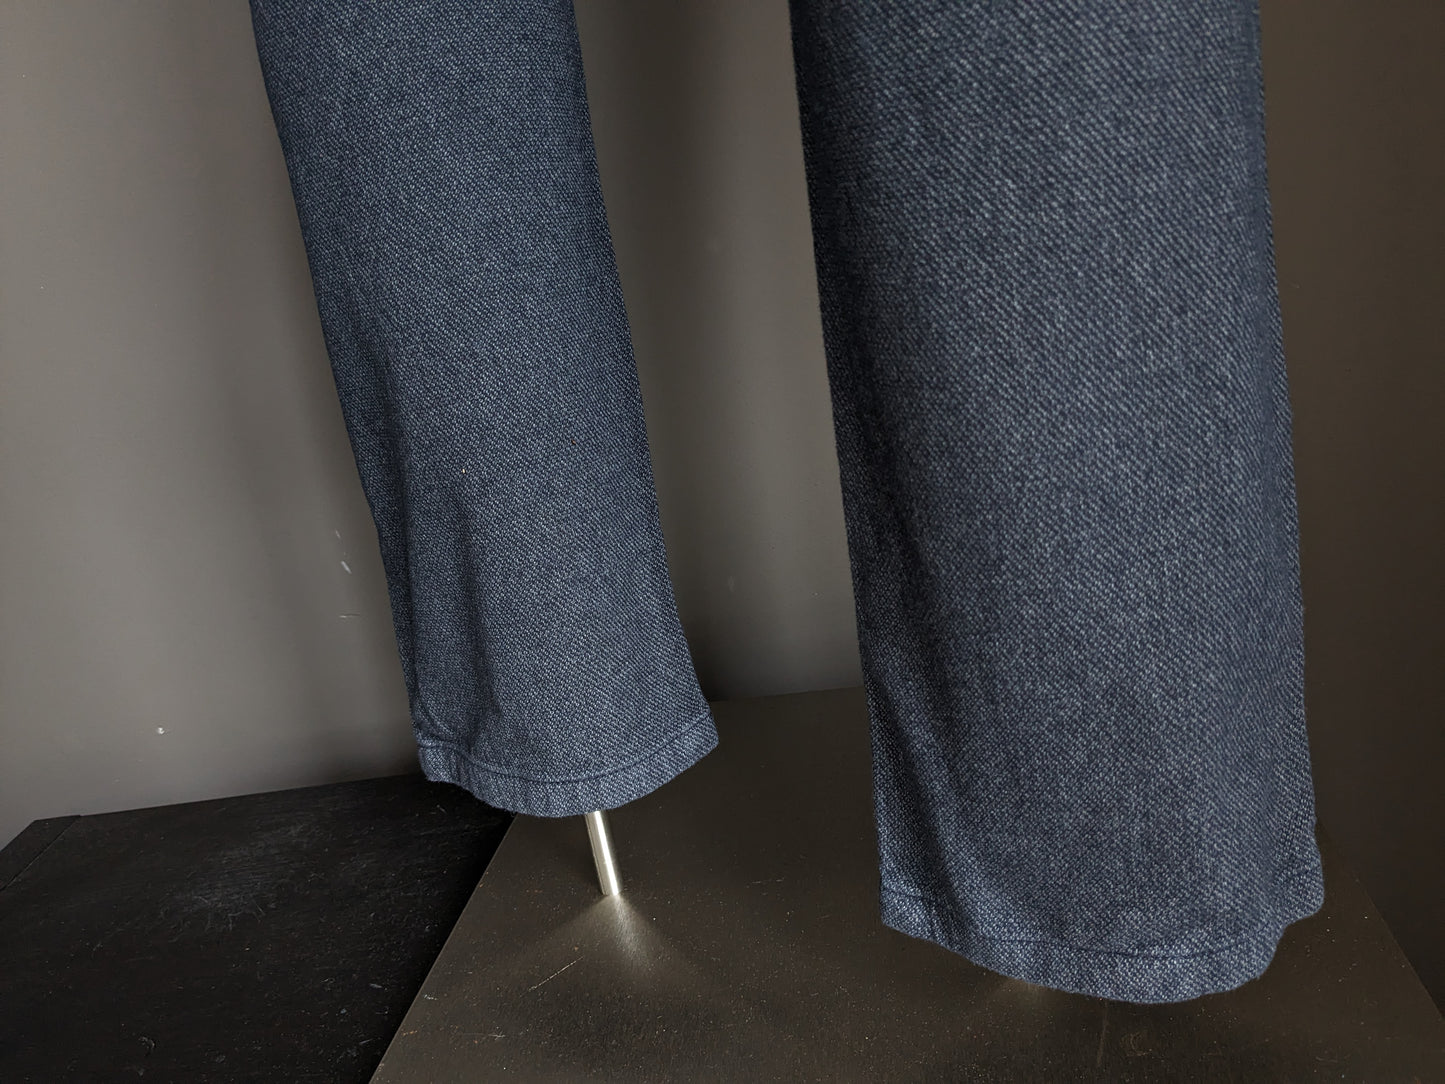 Pantaloni / pantaloni del Gardeur. Grigio blu miscelato. Fit moderno. Taglia 34 - L34.